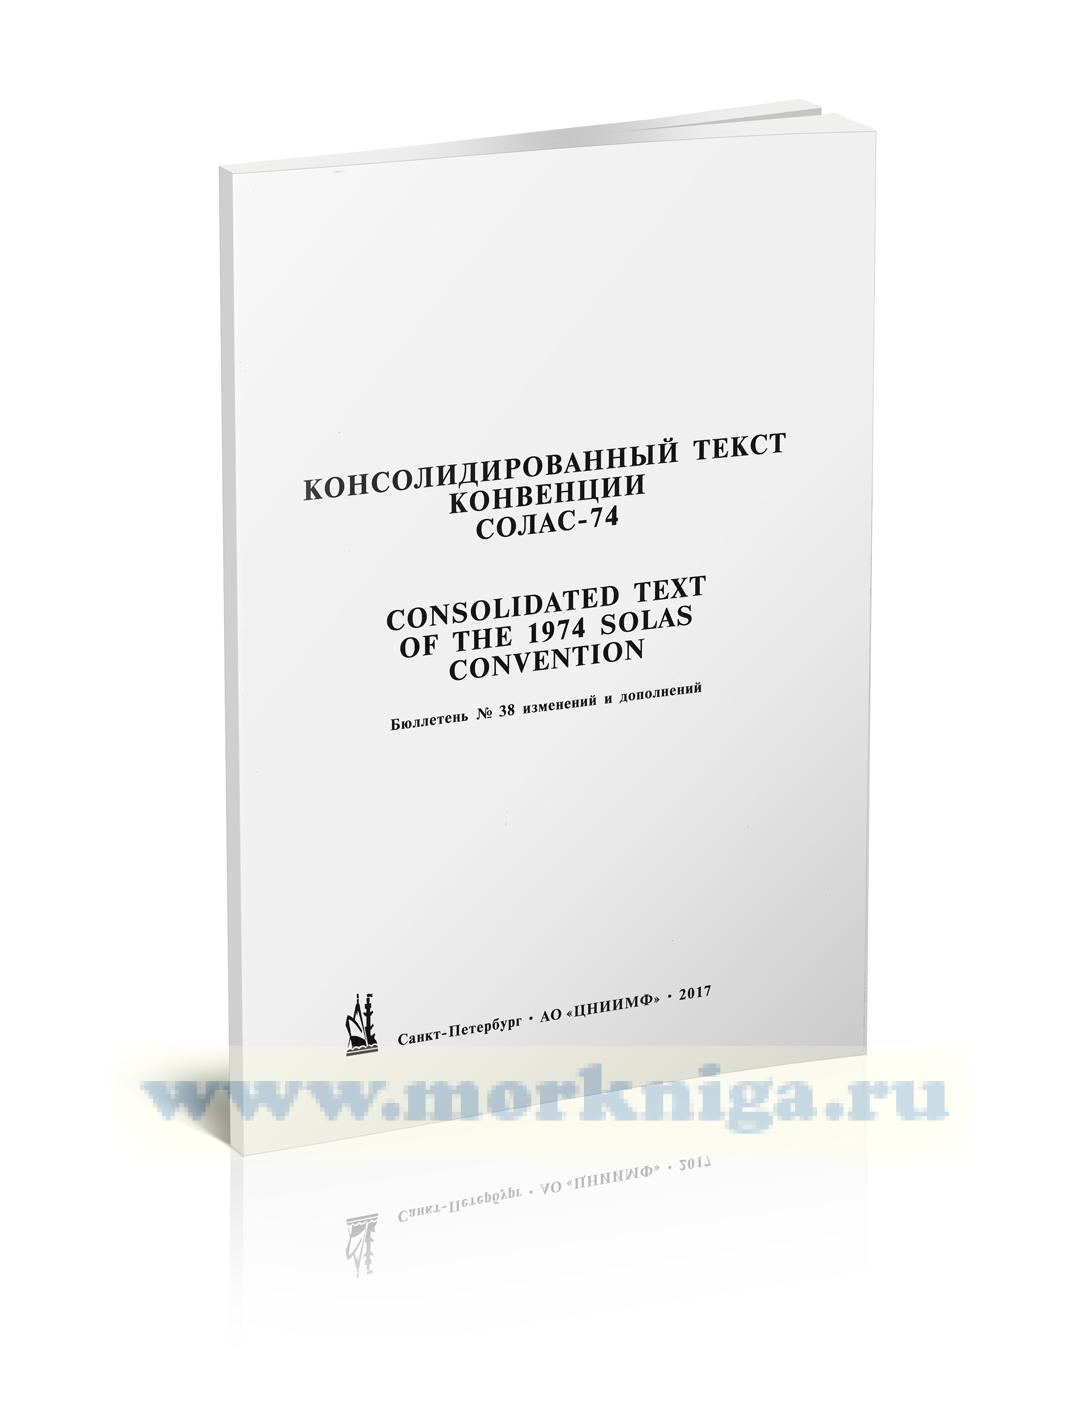 Бюллетень № 38 изменений и дополнений к Консолидированному тексту МК СОЛАС - 74